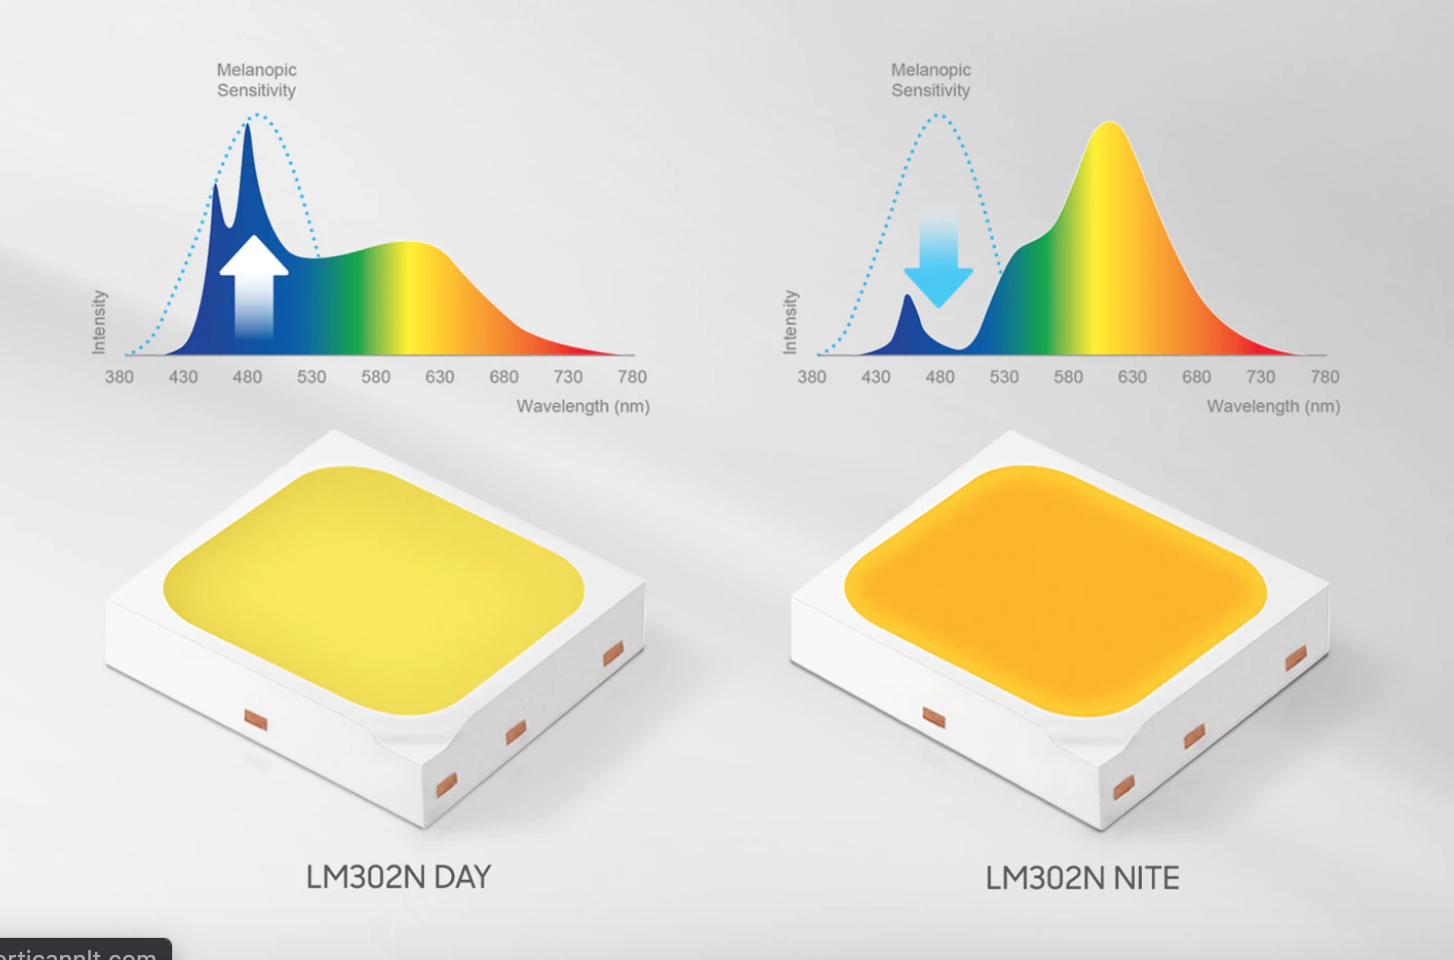 Samsung LEDs help humans adjust melatonin levels